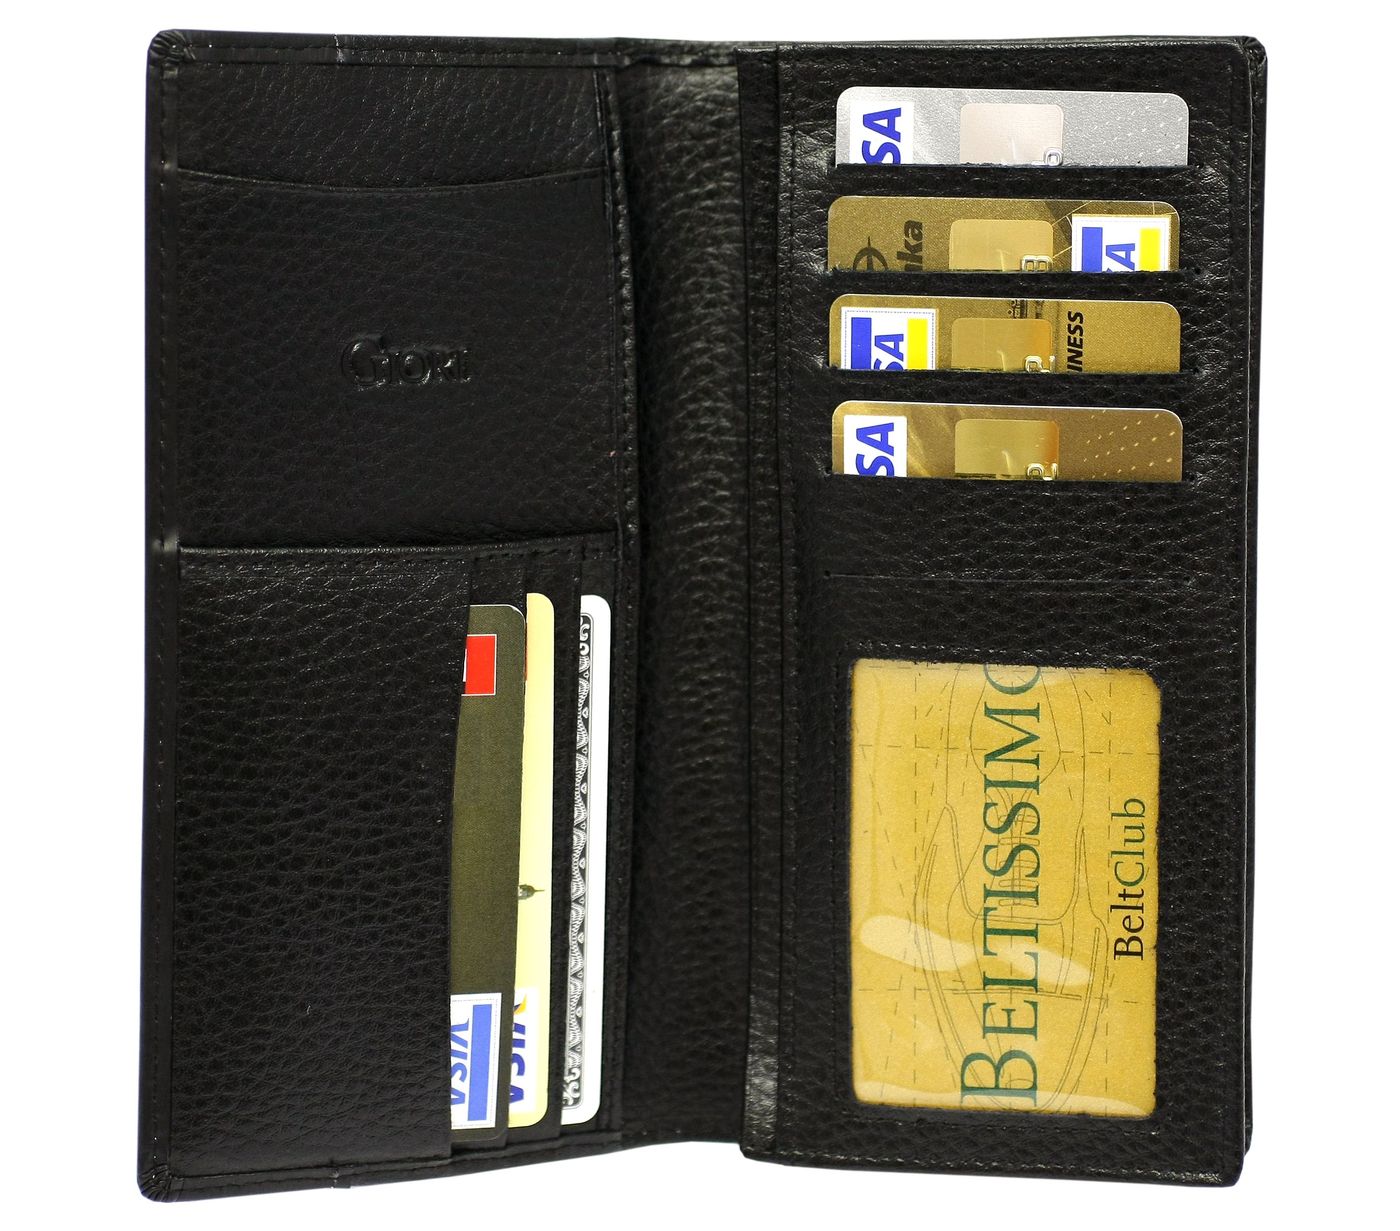 Dámská kožená peněženka Giori Milano RS0504